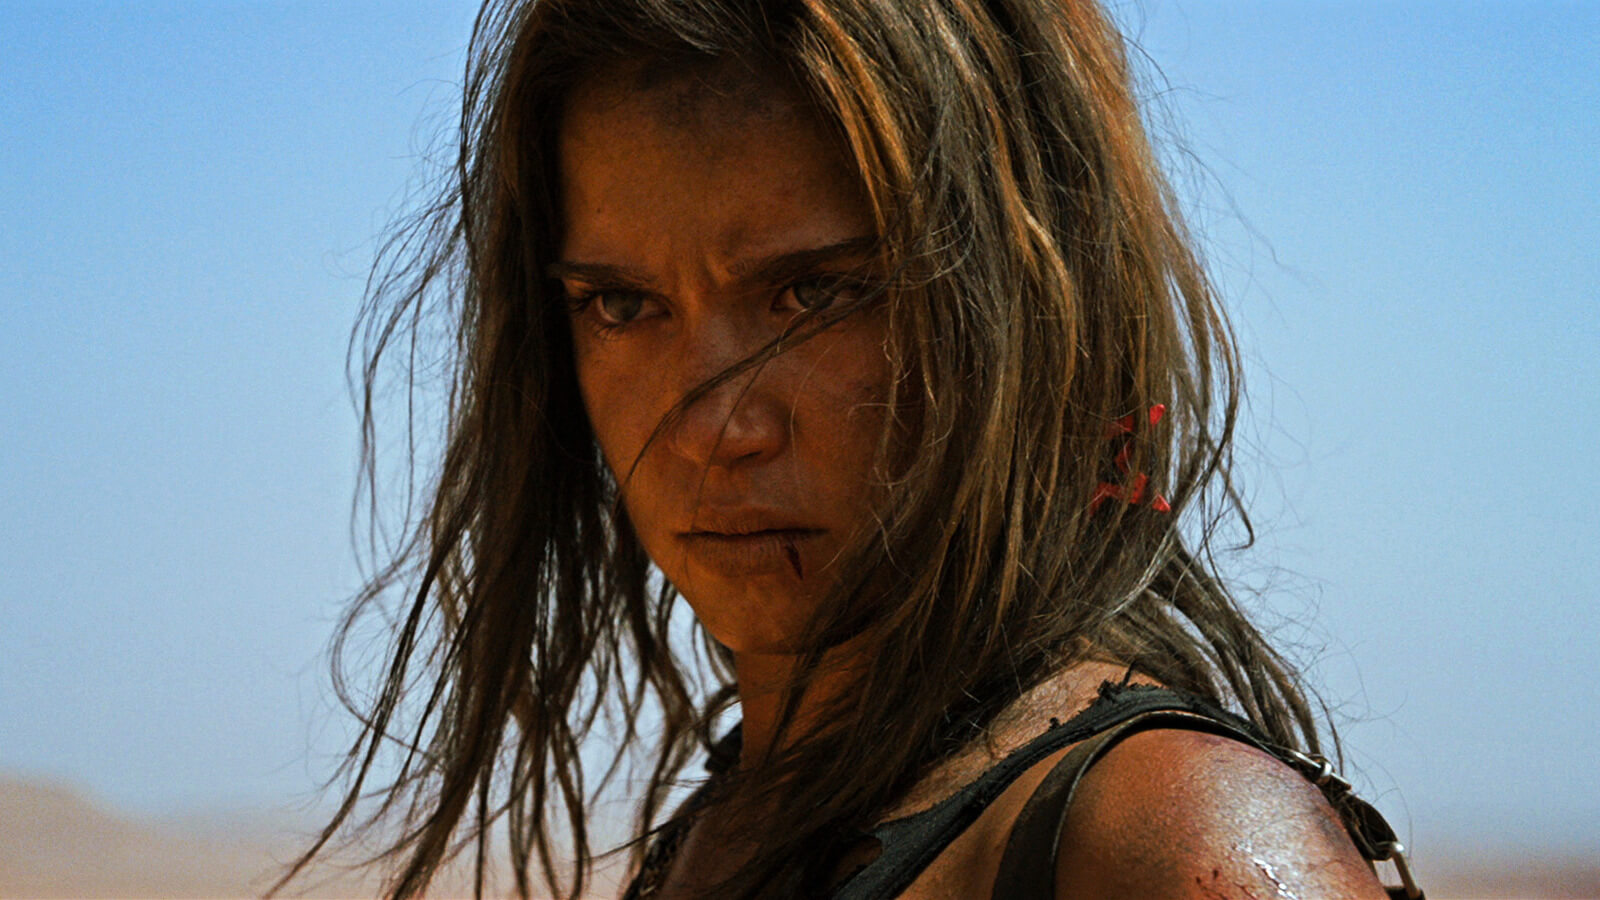 Revenge star Matilda Lutz cast as Red Sonja